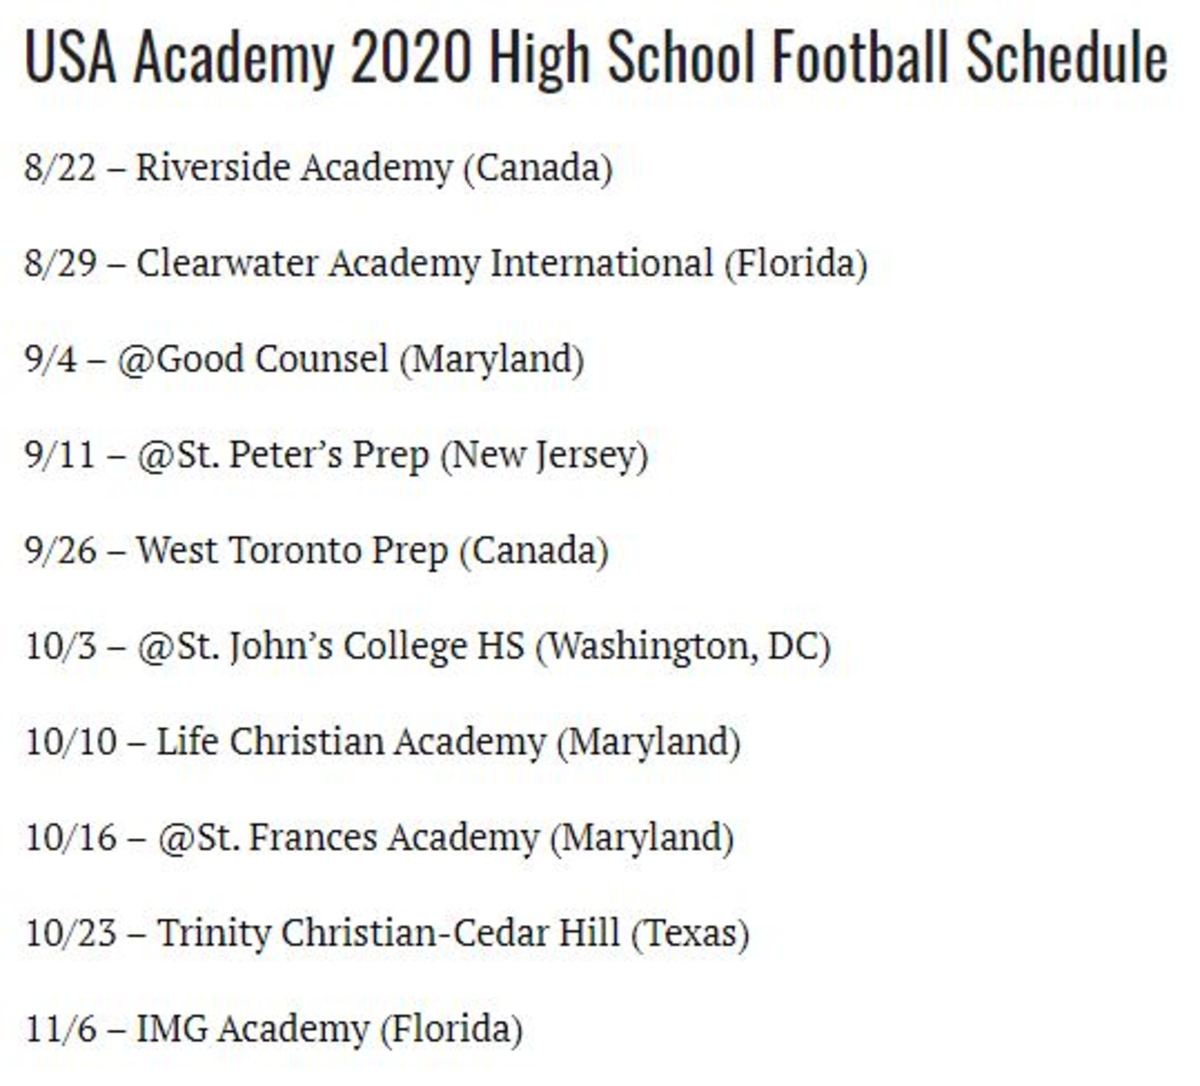 USA Academy 2020 Schedule